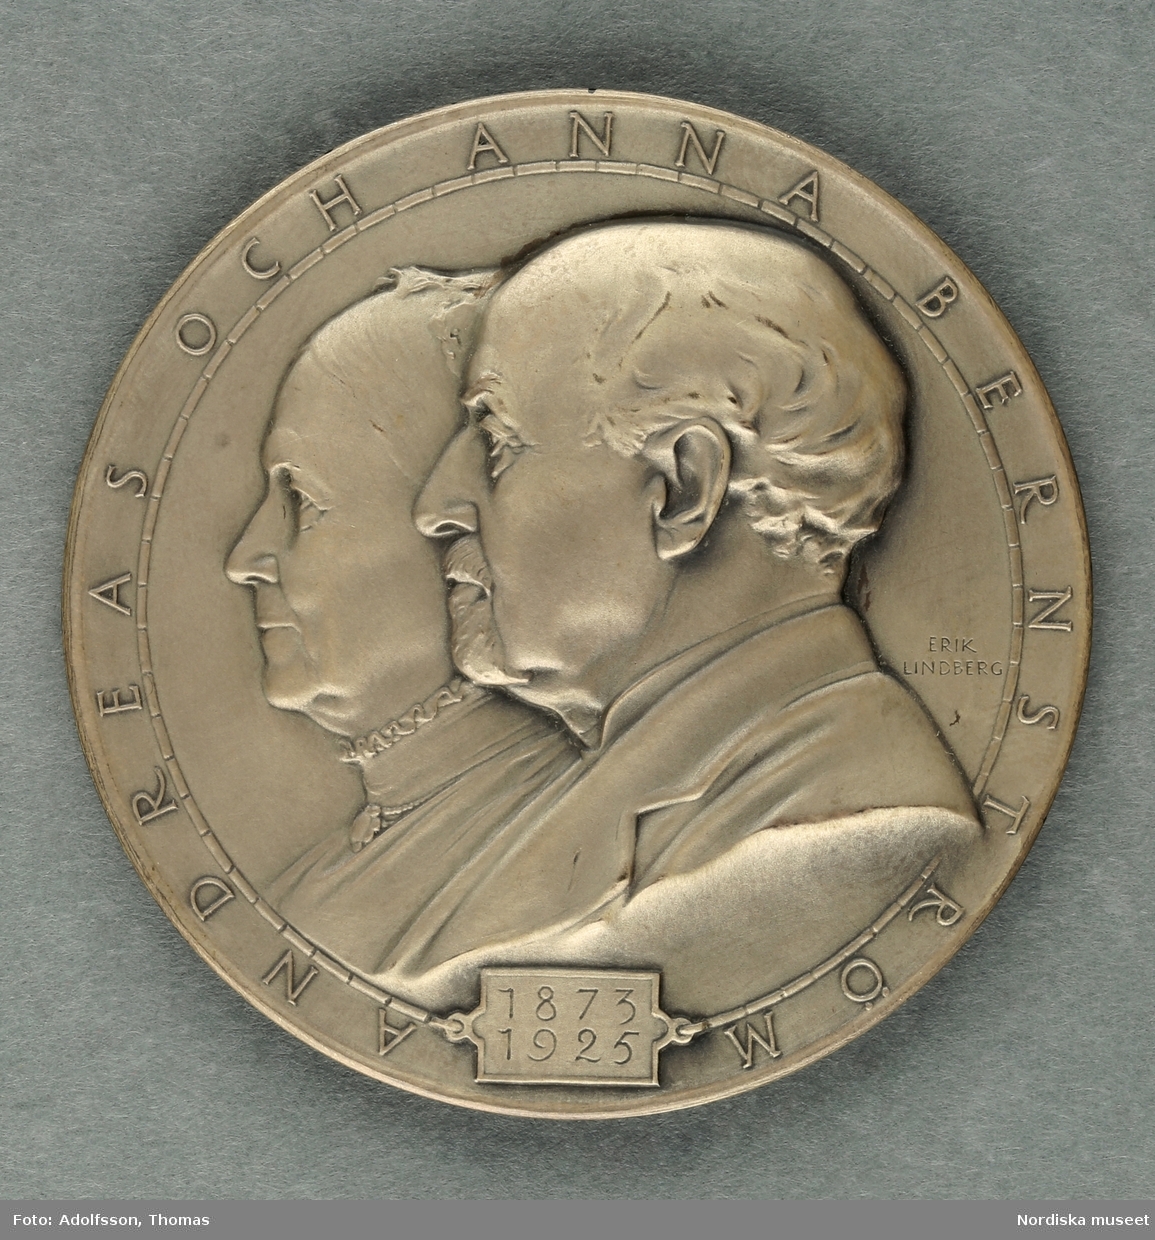 Numismatiker och pollettsamlare, en av stiftarna av Svenska numismatiska föreningen.